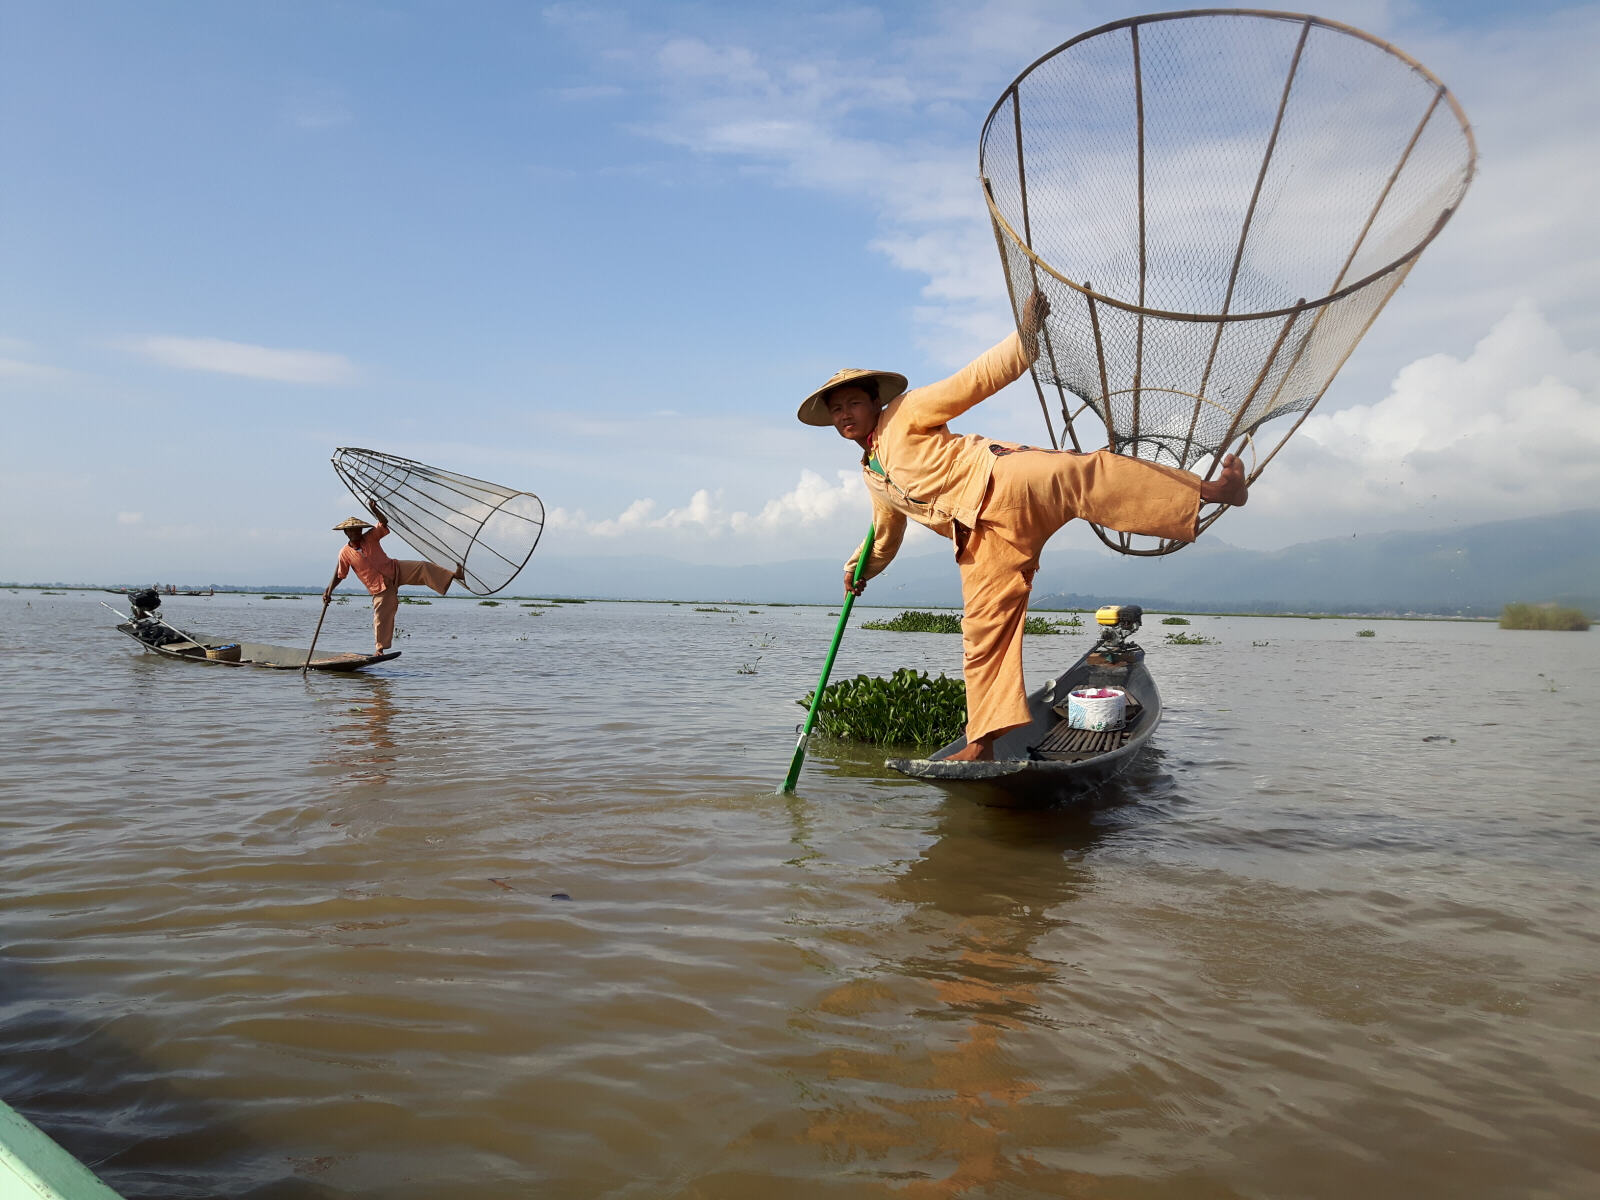 A 'leg fisherman' on Inle lake, Burma